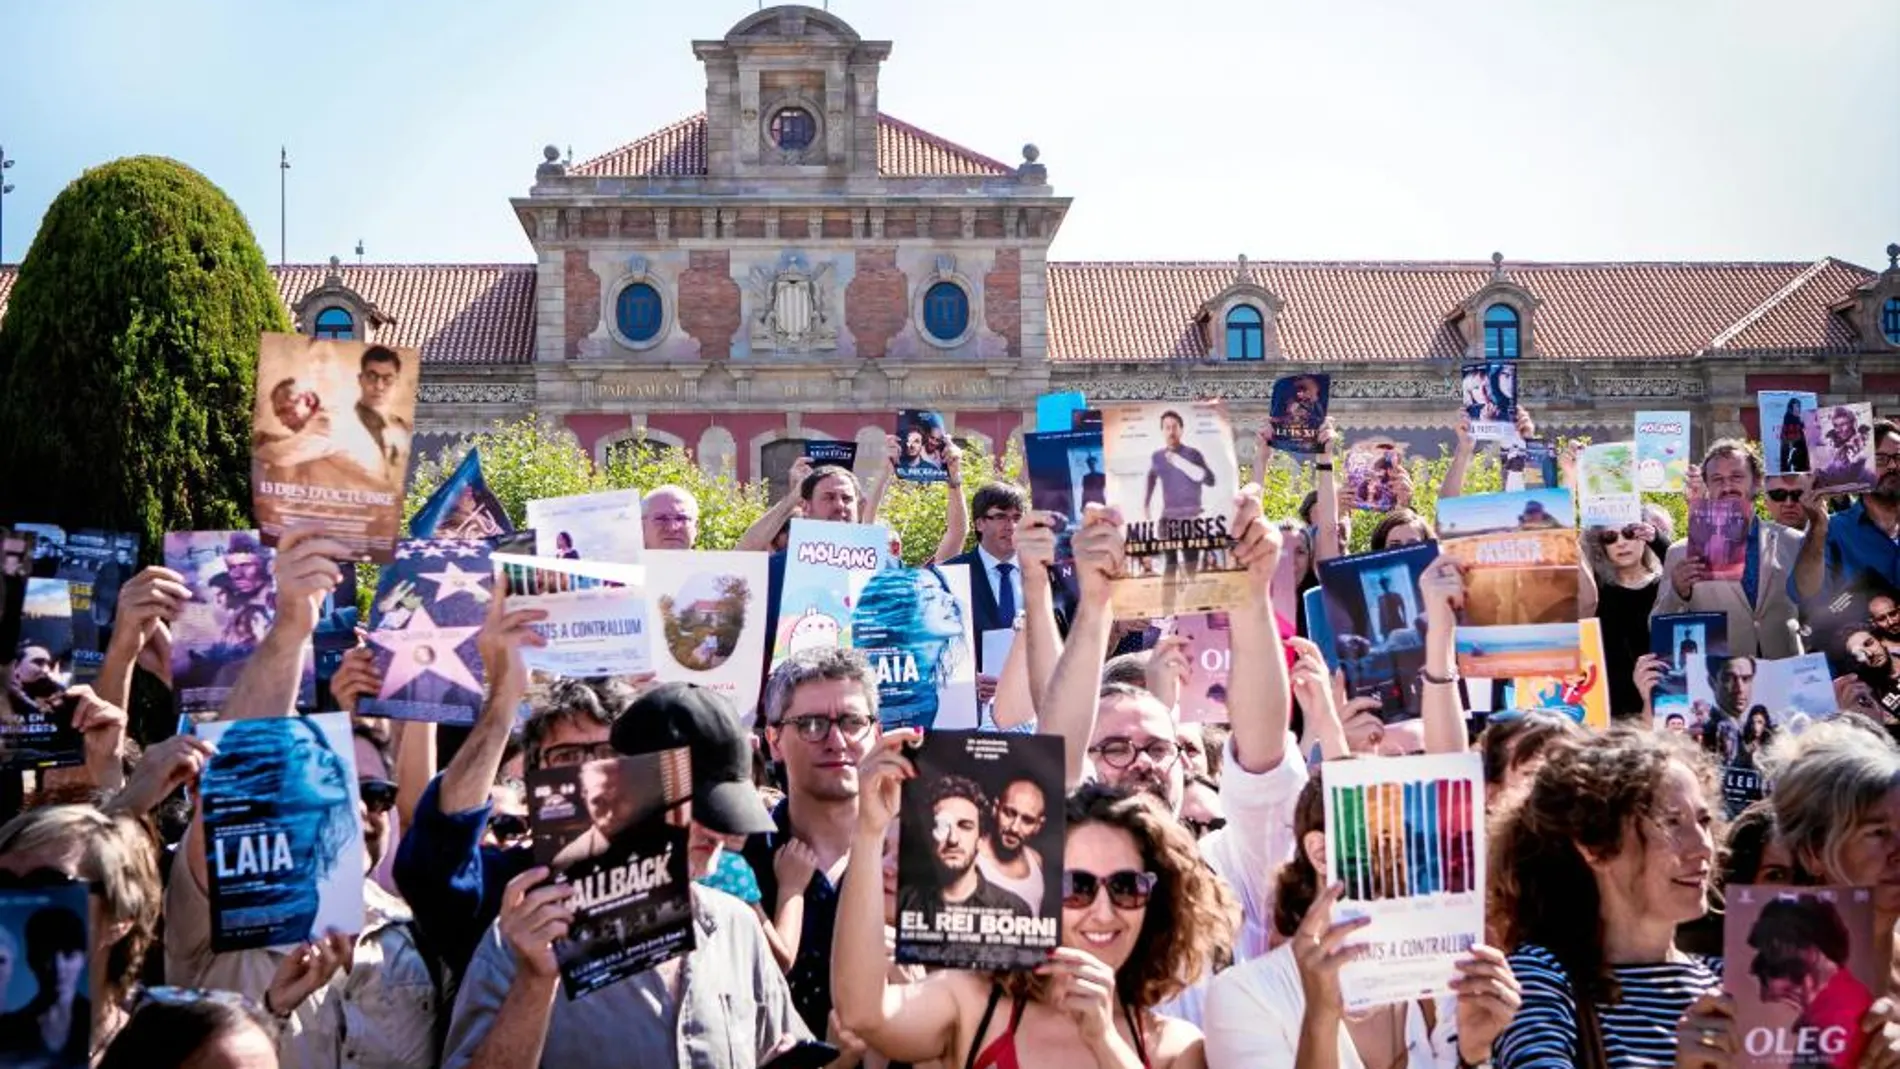 Cineastas, actores y productores, con carteles de película en mano, ayer frente al Parlament de Cataluña